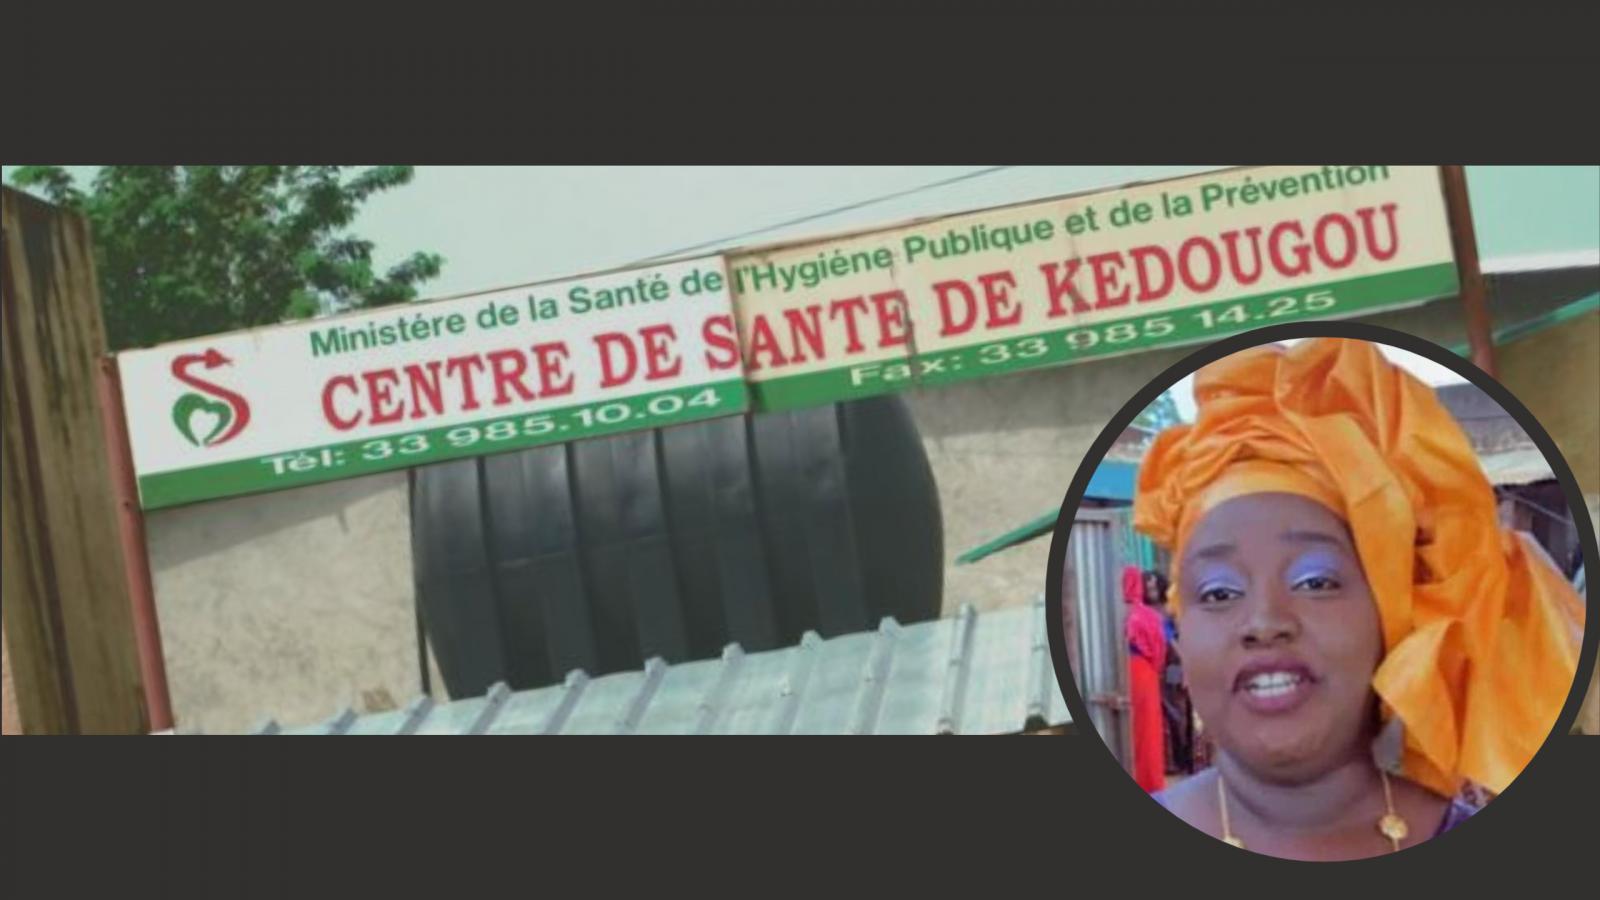 Kedougou : Le Gynécologue et son équipe placés sous contrôle judiciaire